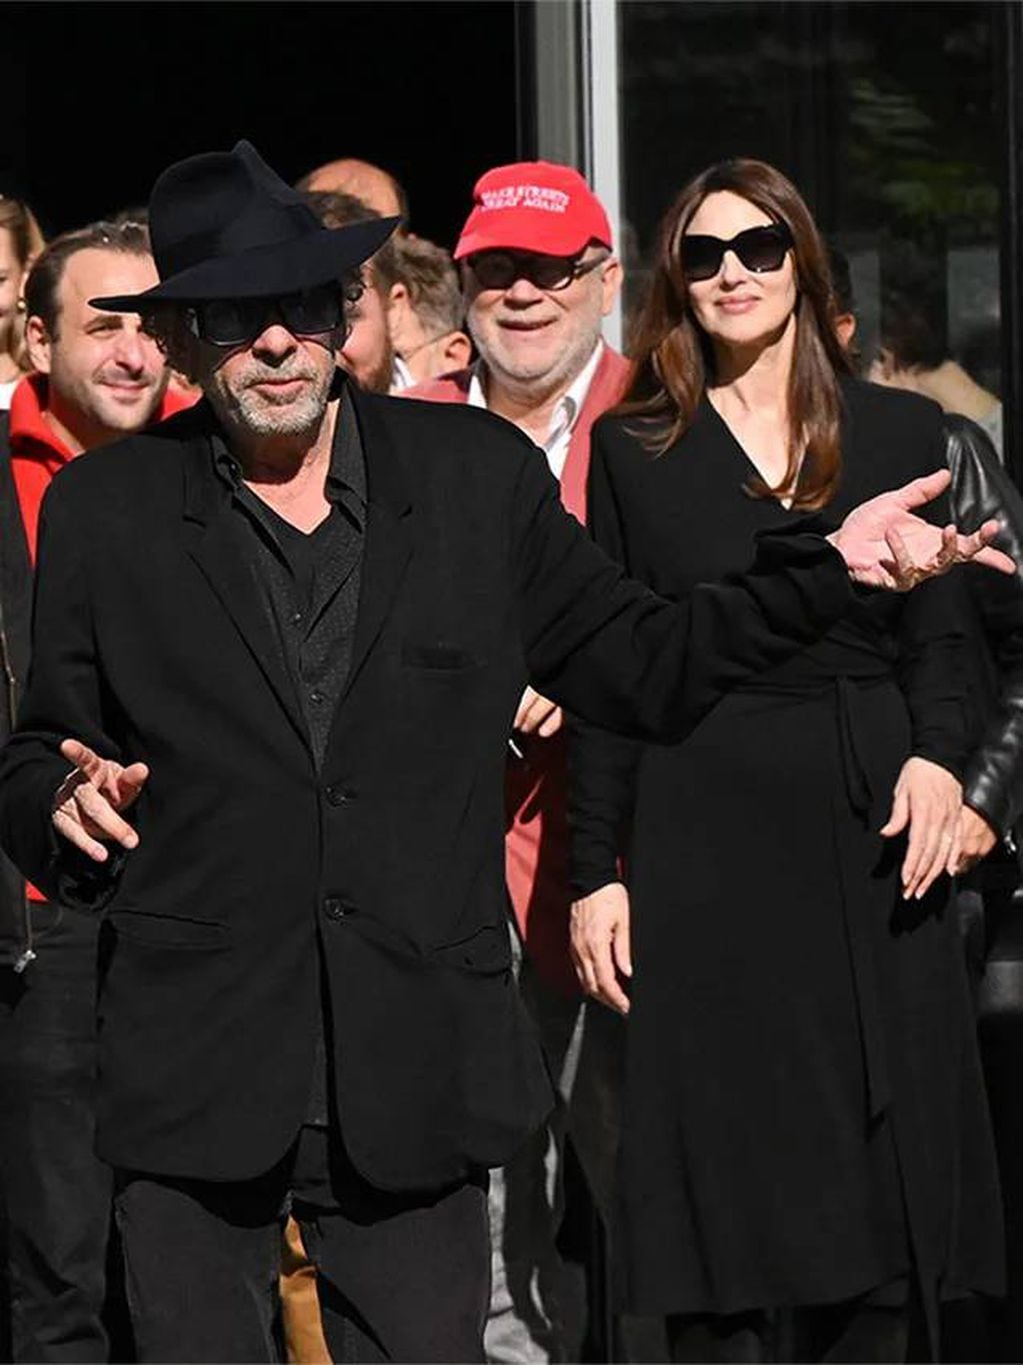 Tim Burton y Monica Bellucci.